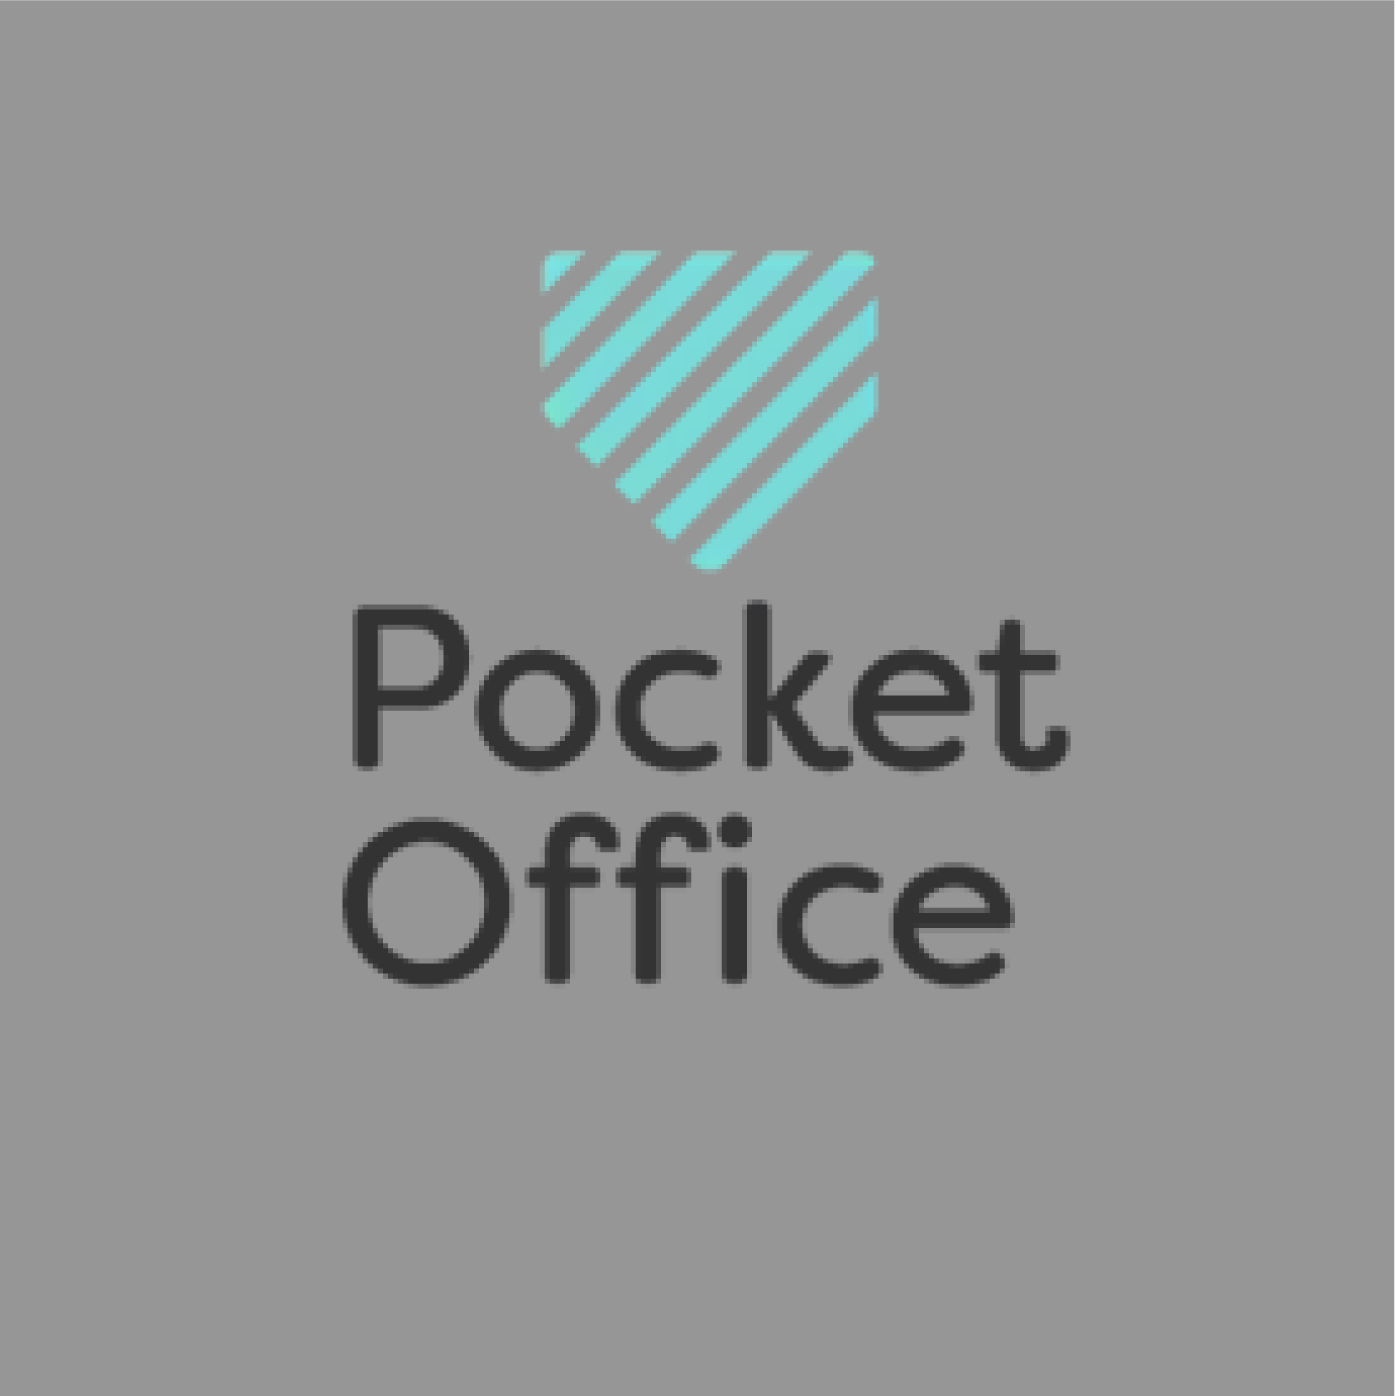 pocket office-01.png